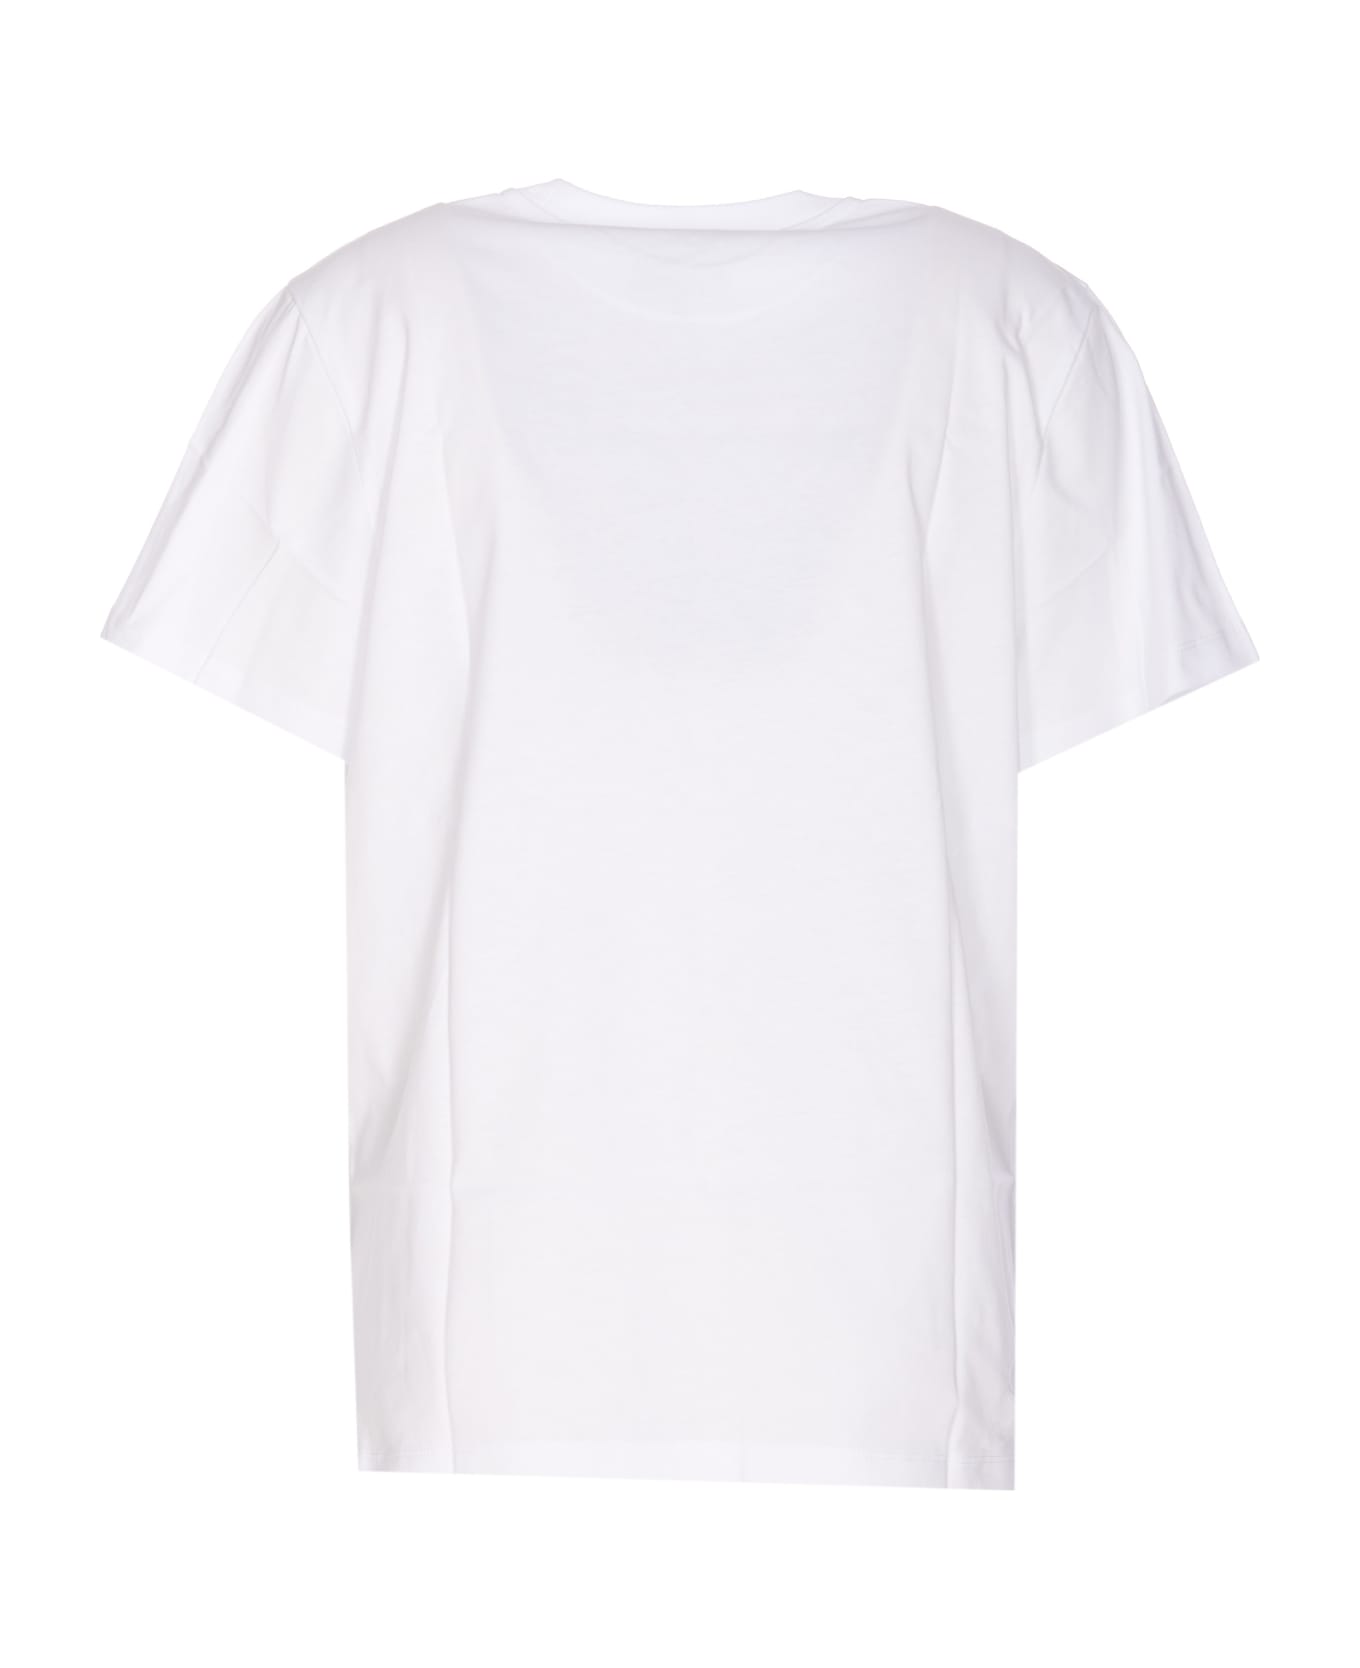 Ganni Elements T-shirt - White